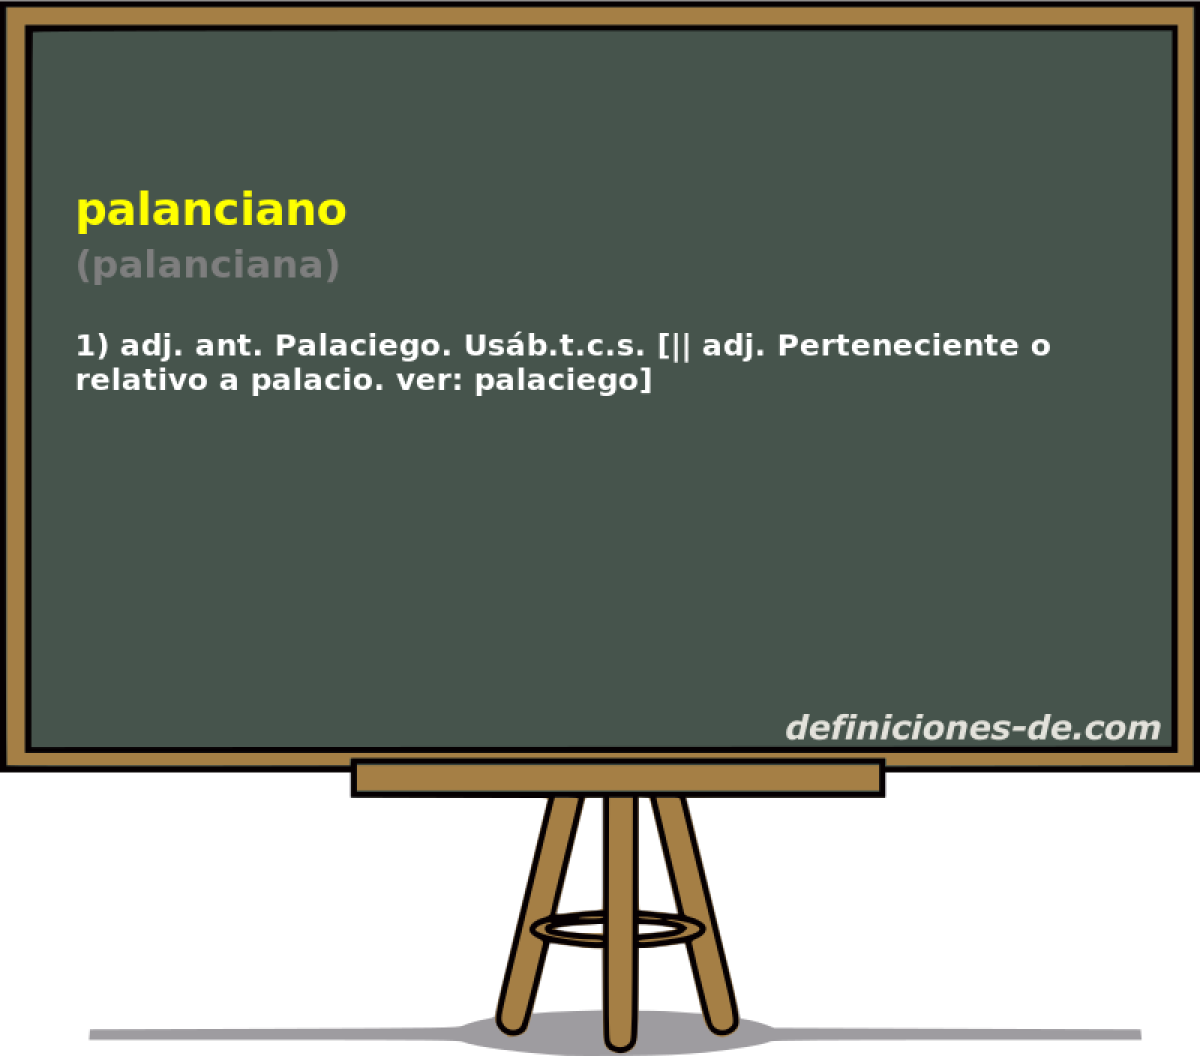 palanciano (palanciana)